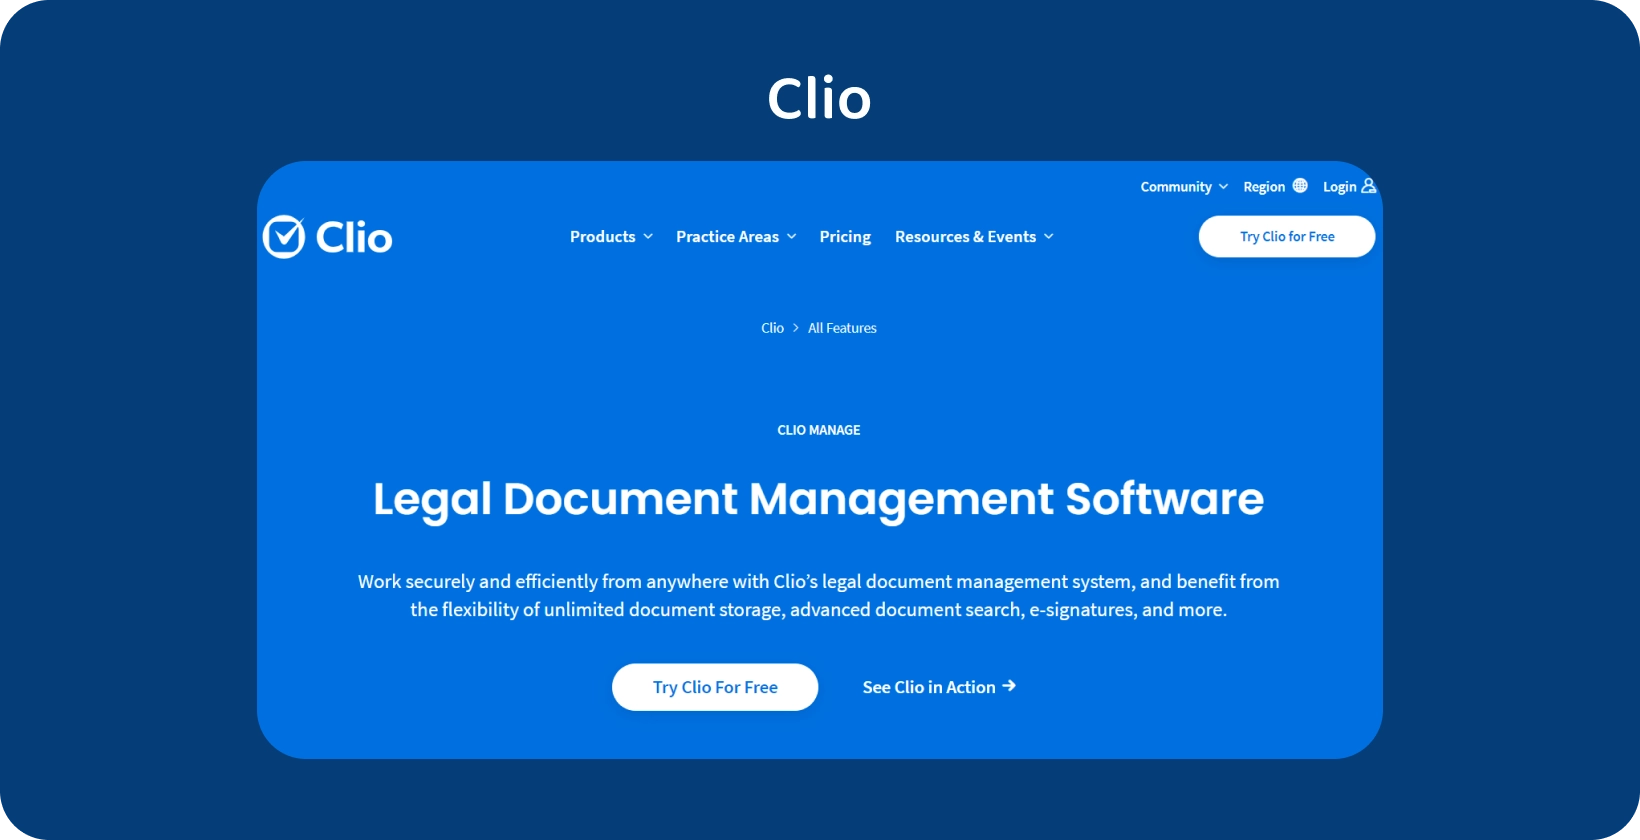 L'interfaccia utente di Clio mostra il suo software di gestione dei documenti legali, ottimizzando la gestione organizzata dei record.